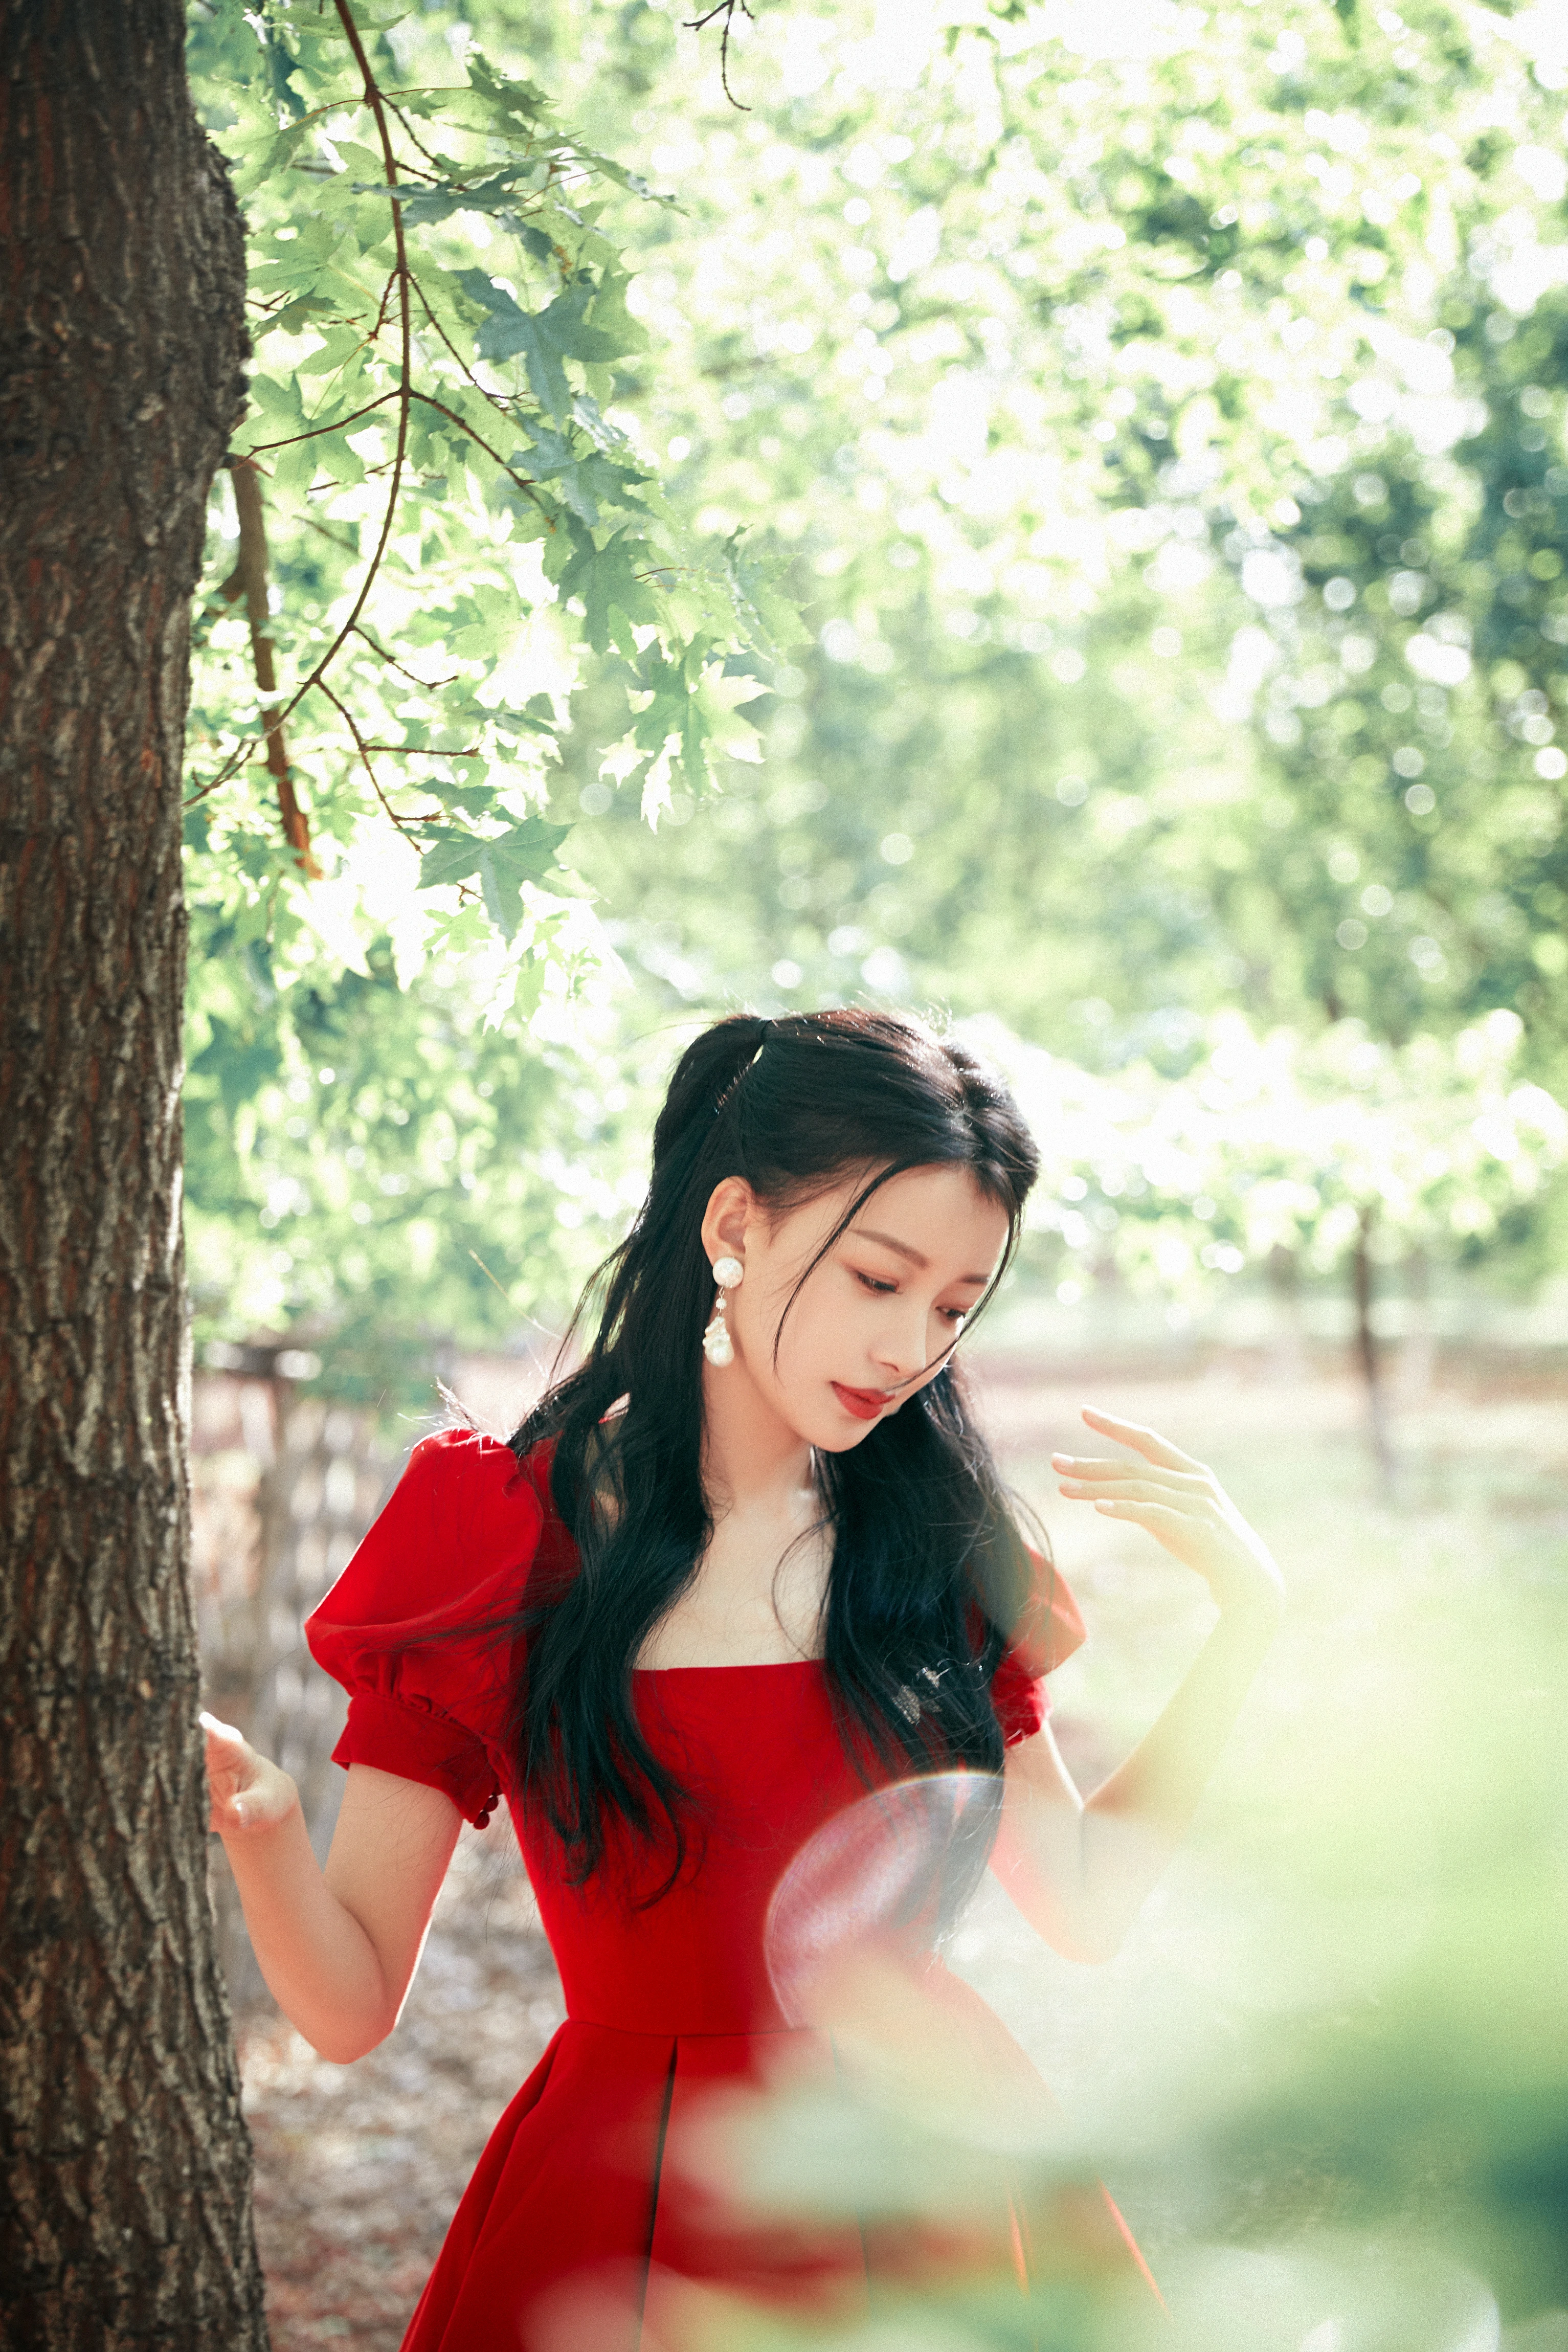 孙怡穿红色玫瑰公主裙可爱减龄 花园中随风起舞甜美度满分,